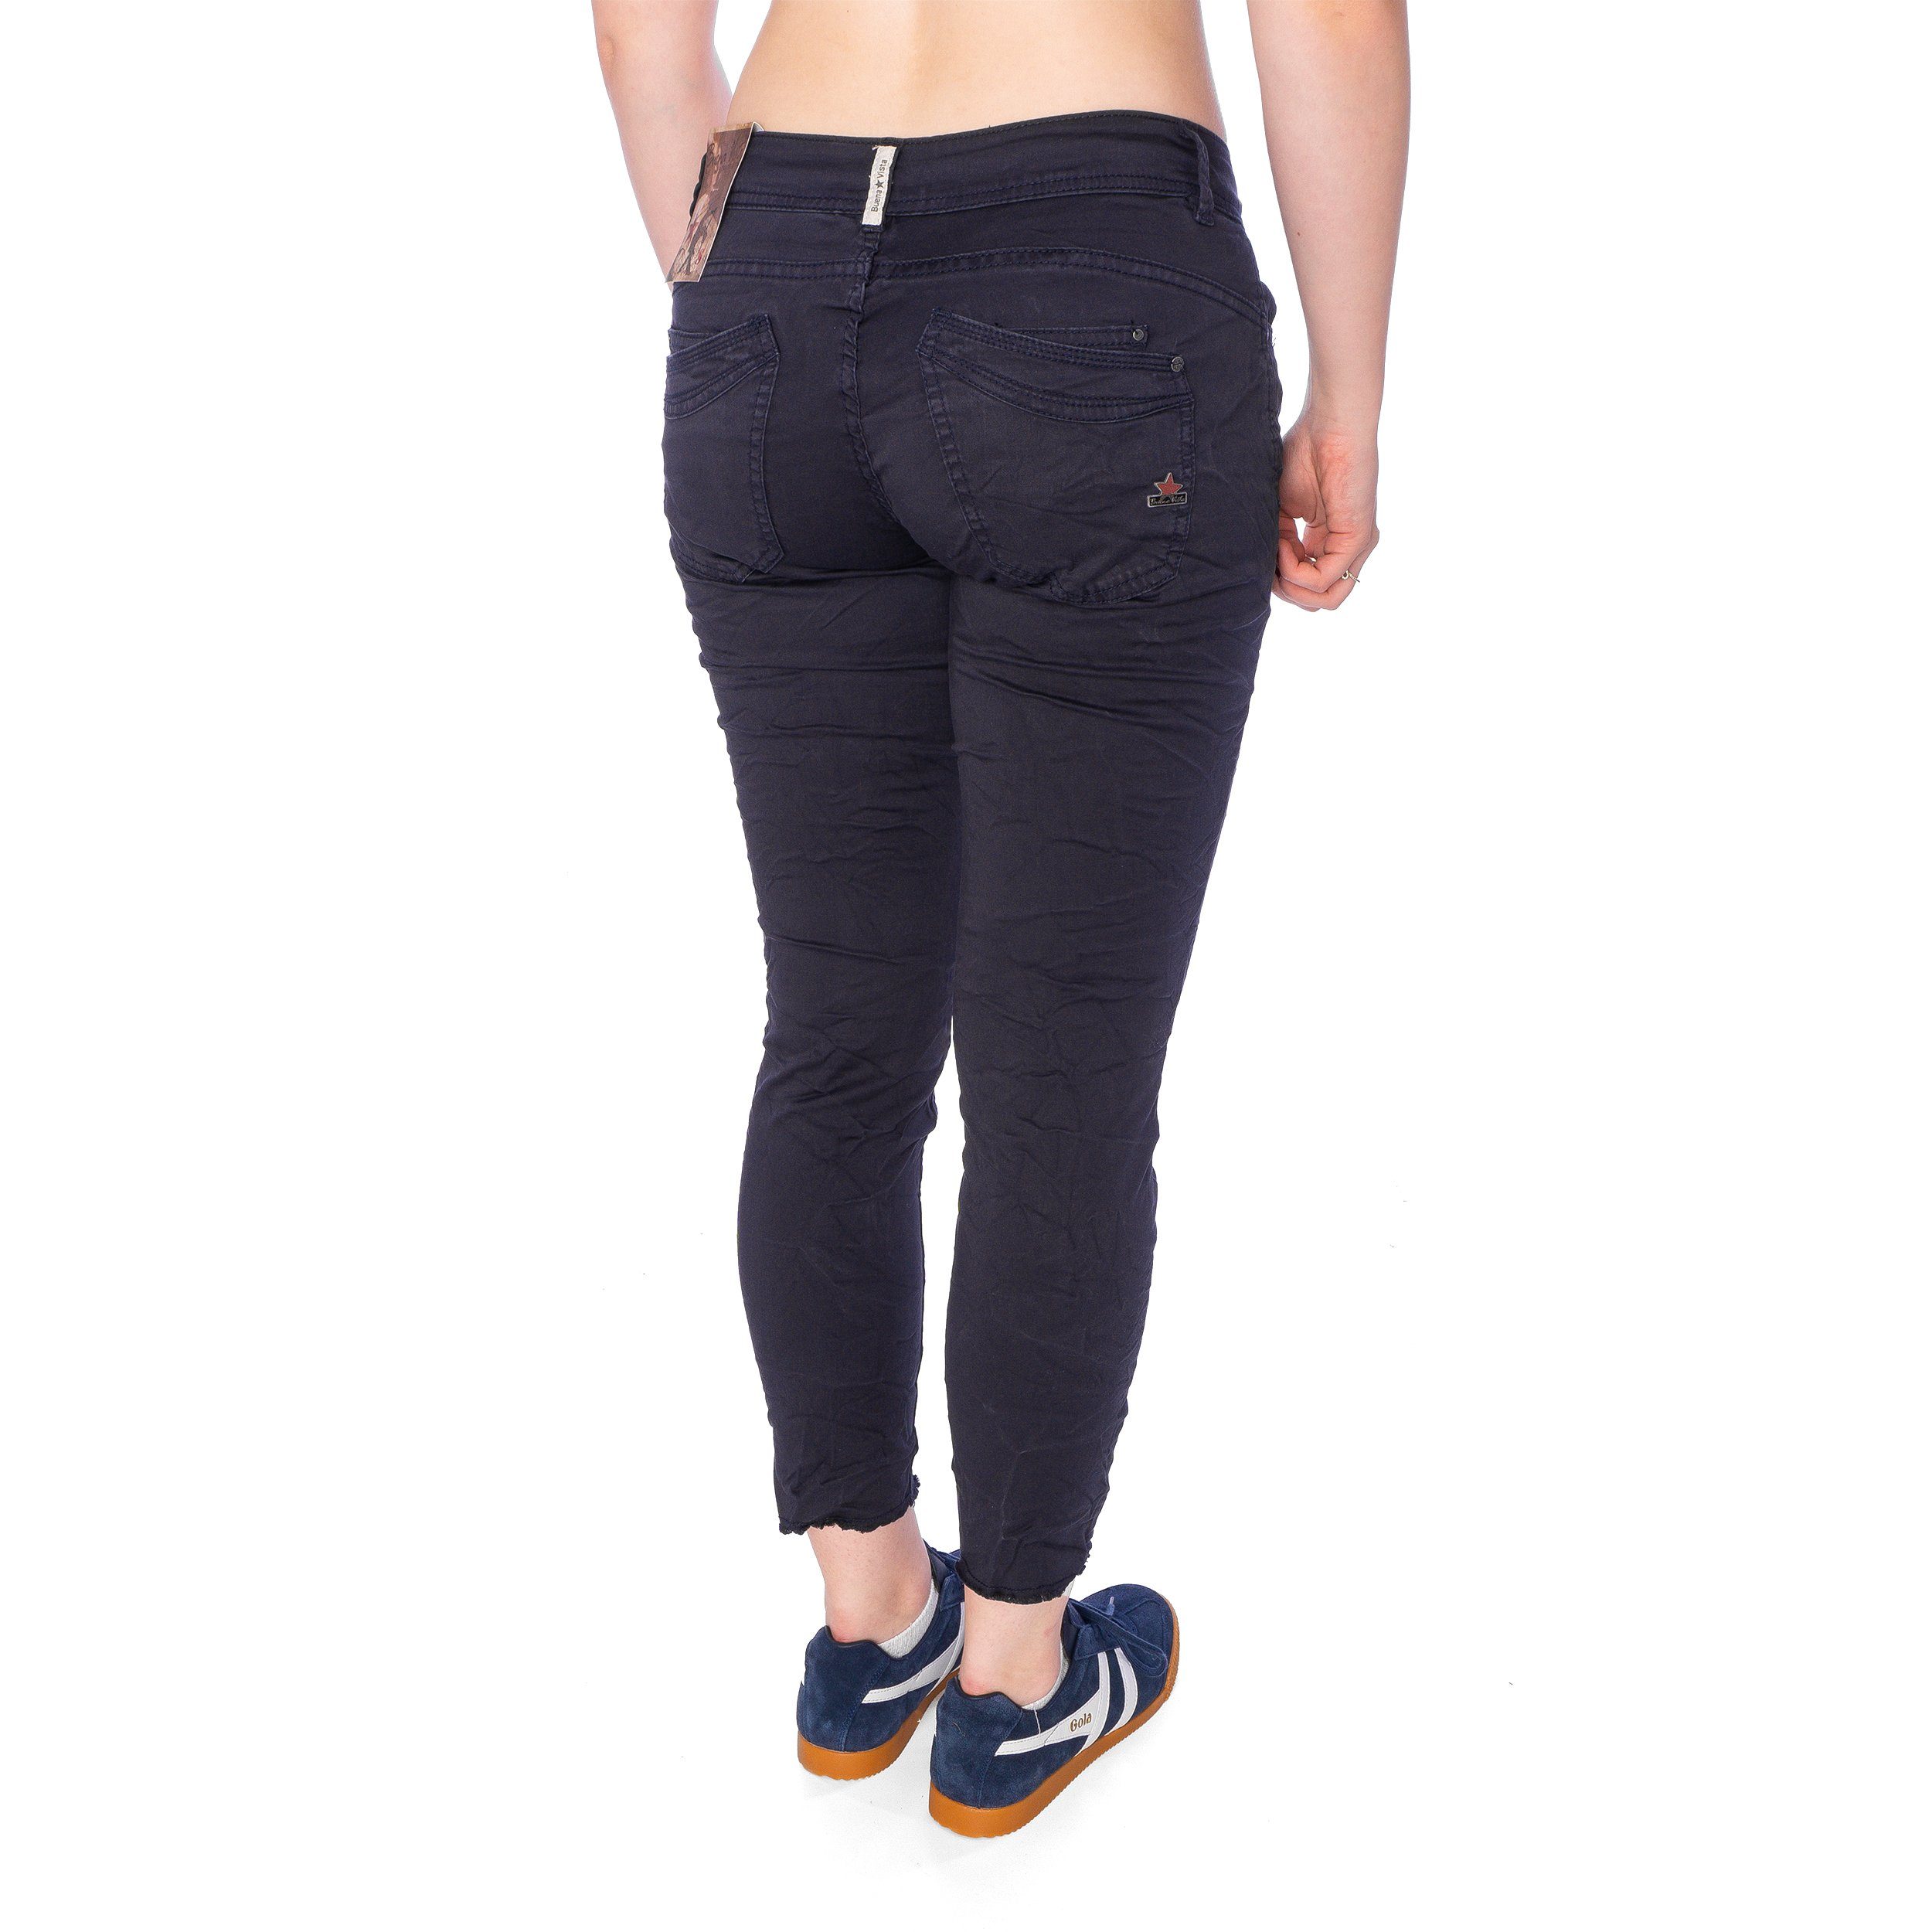 stretch 7/8 dark Malibu Buena Vista Damen Hose Slim-fit-Jeans blue Buena Vista twill Jeans